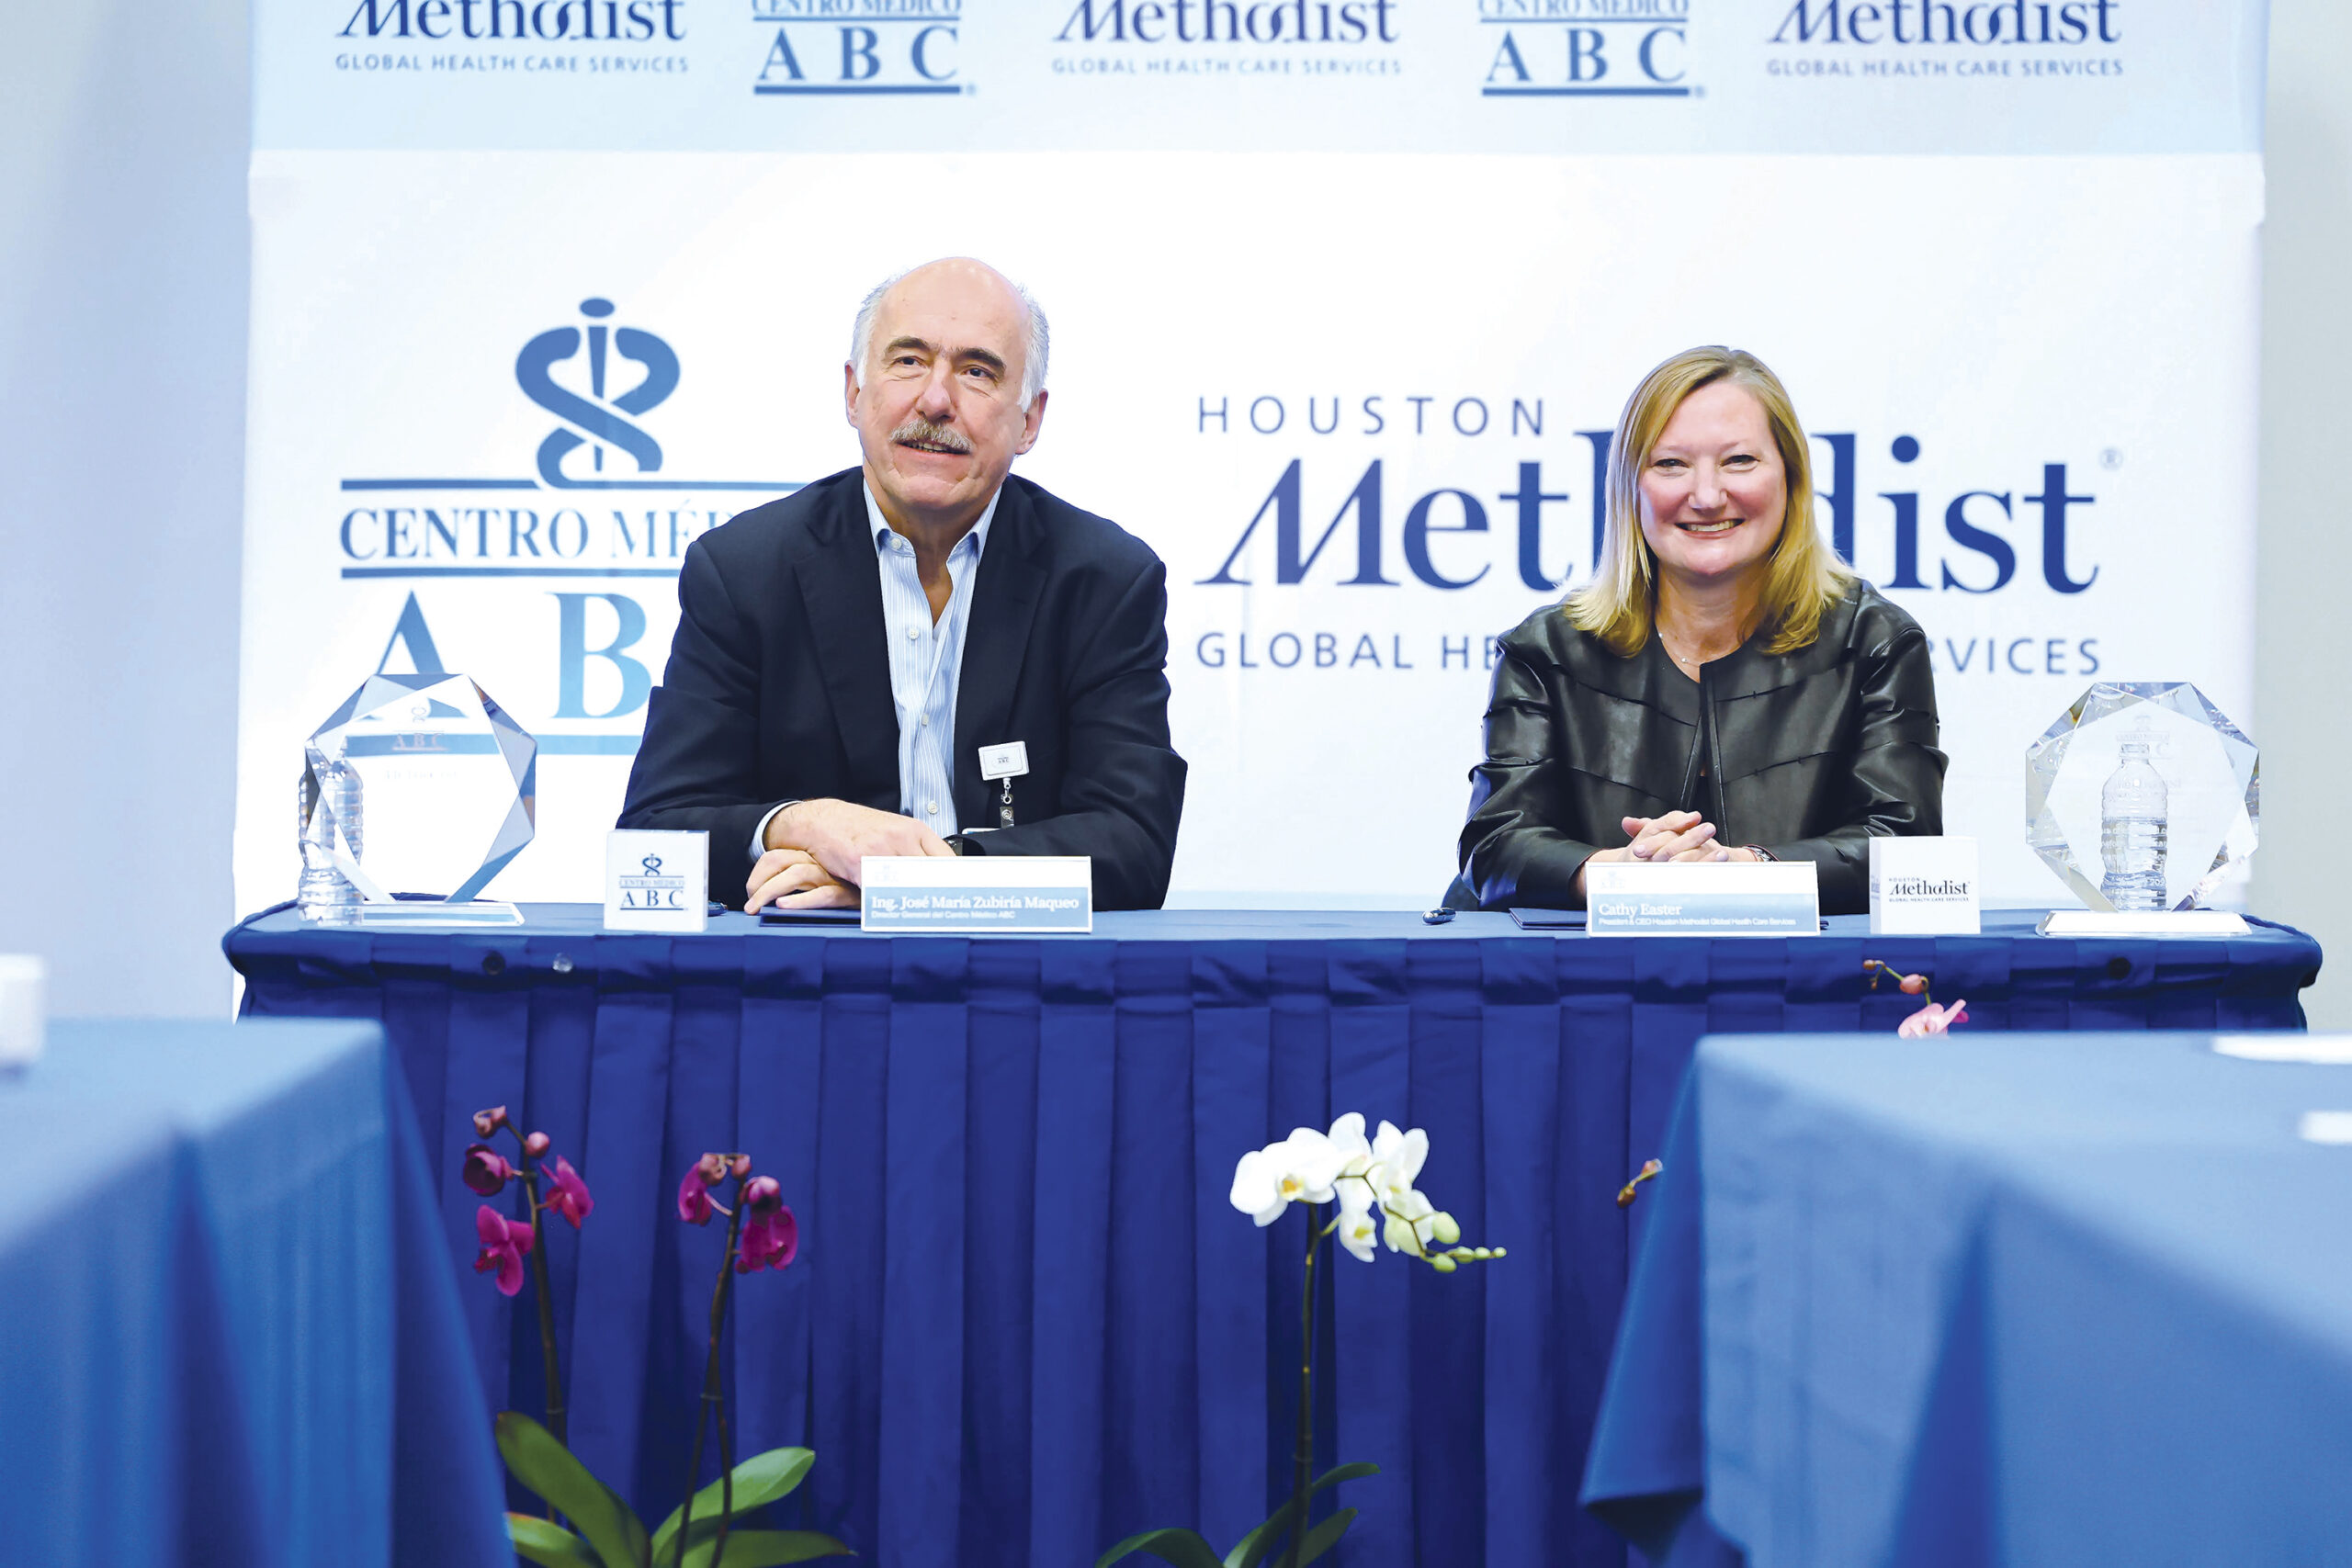 Renuevan acuerdo para fortalecer la calidad clínica y seguridad del paciente entre el Hospital Houston Methodist de los Estados Unidos y el Centro Médico ABC de México